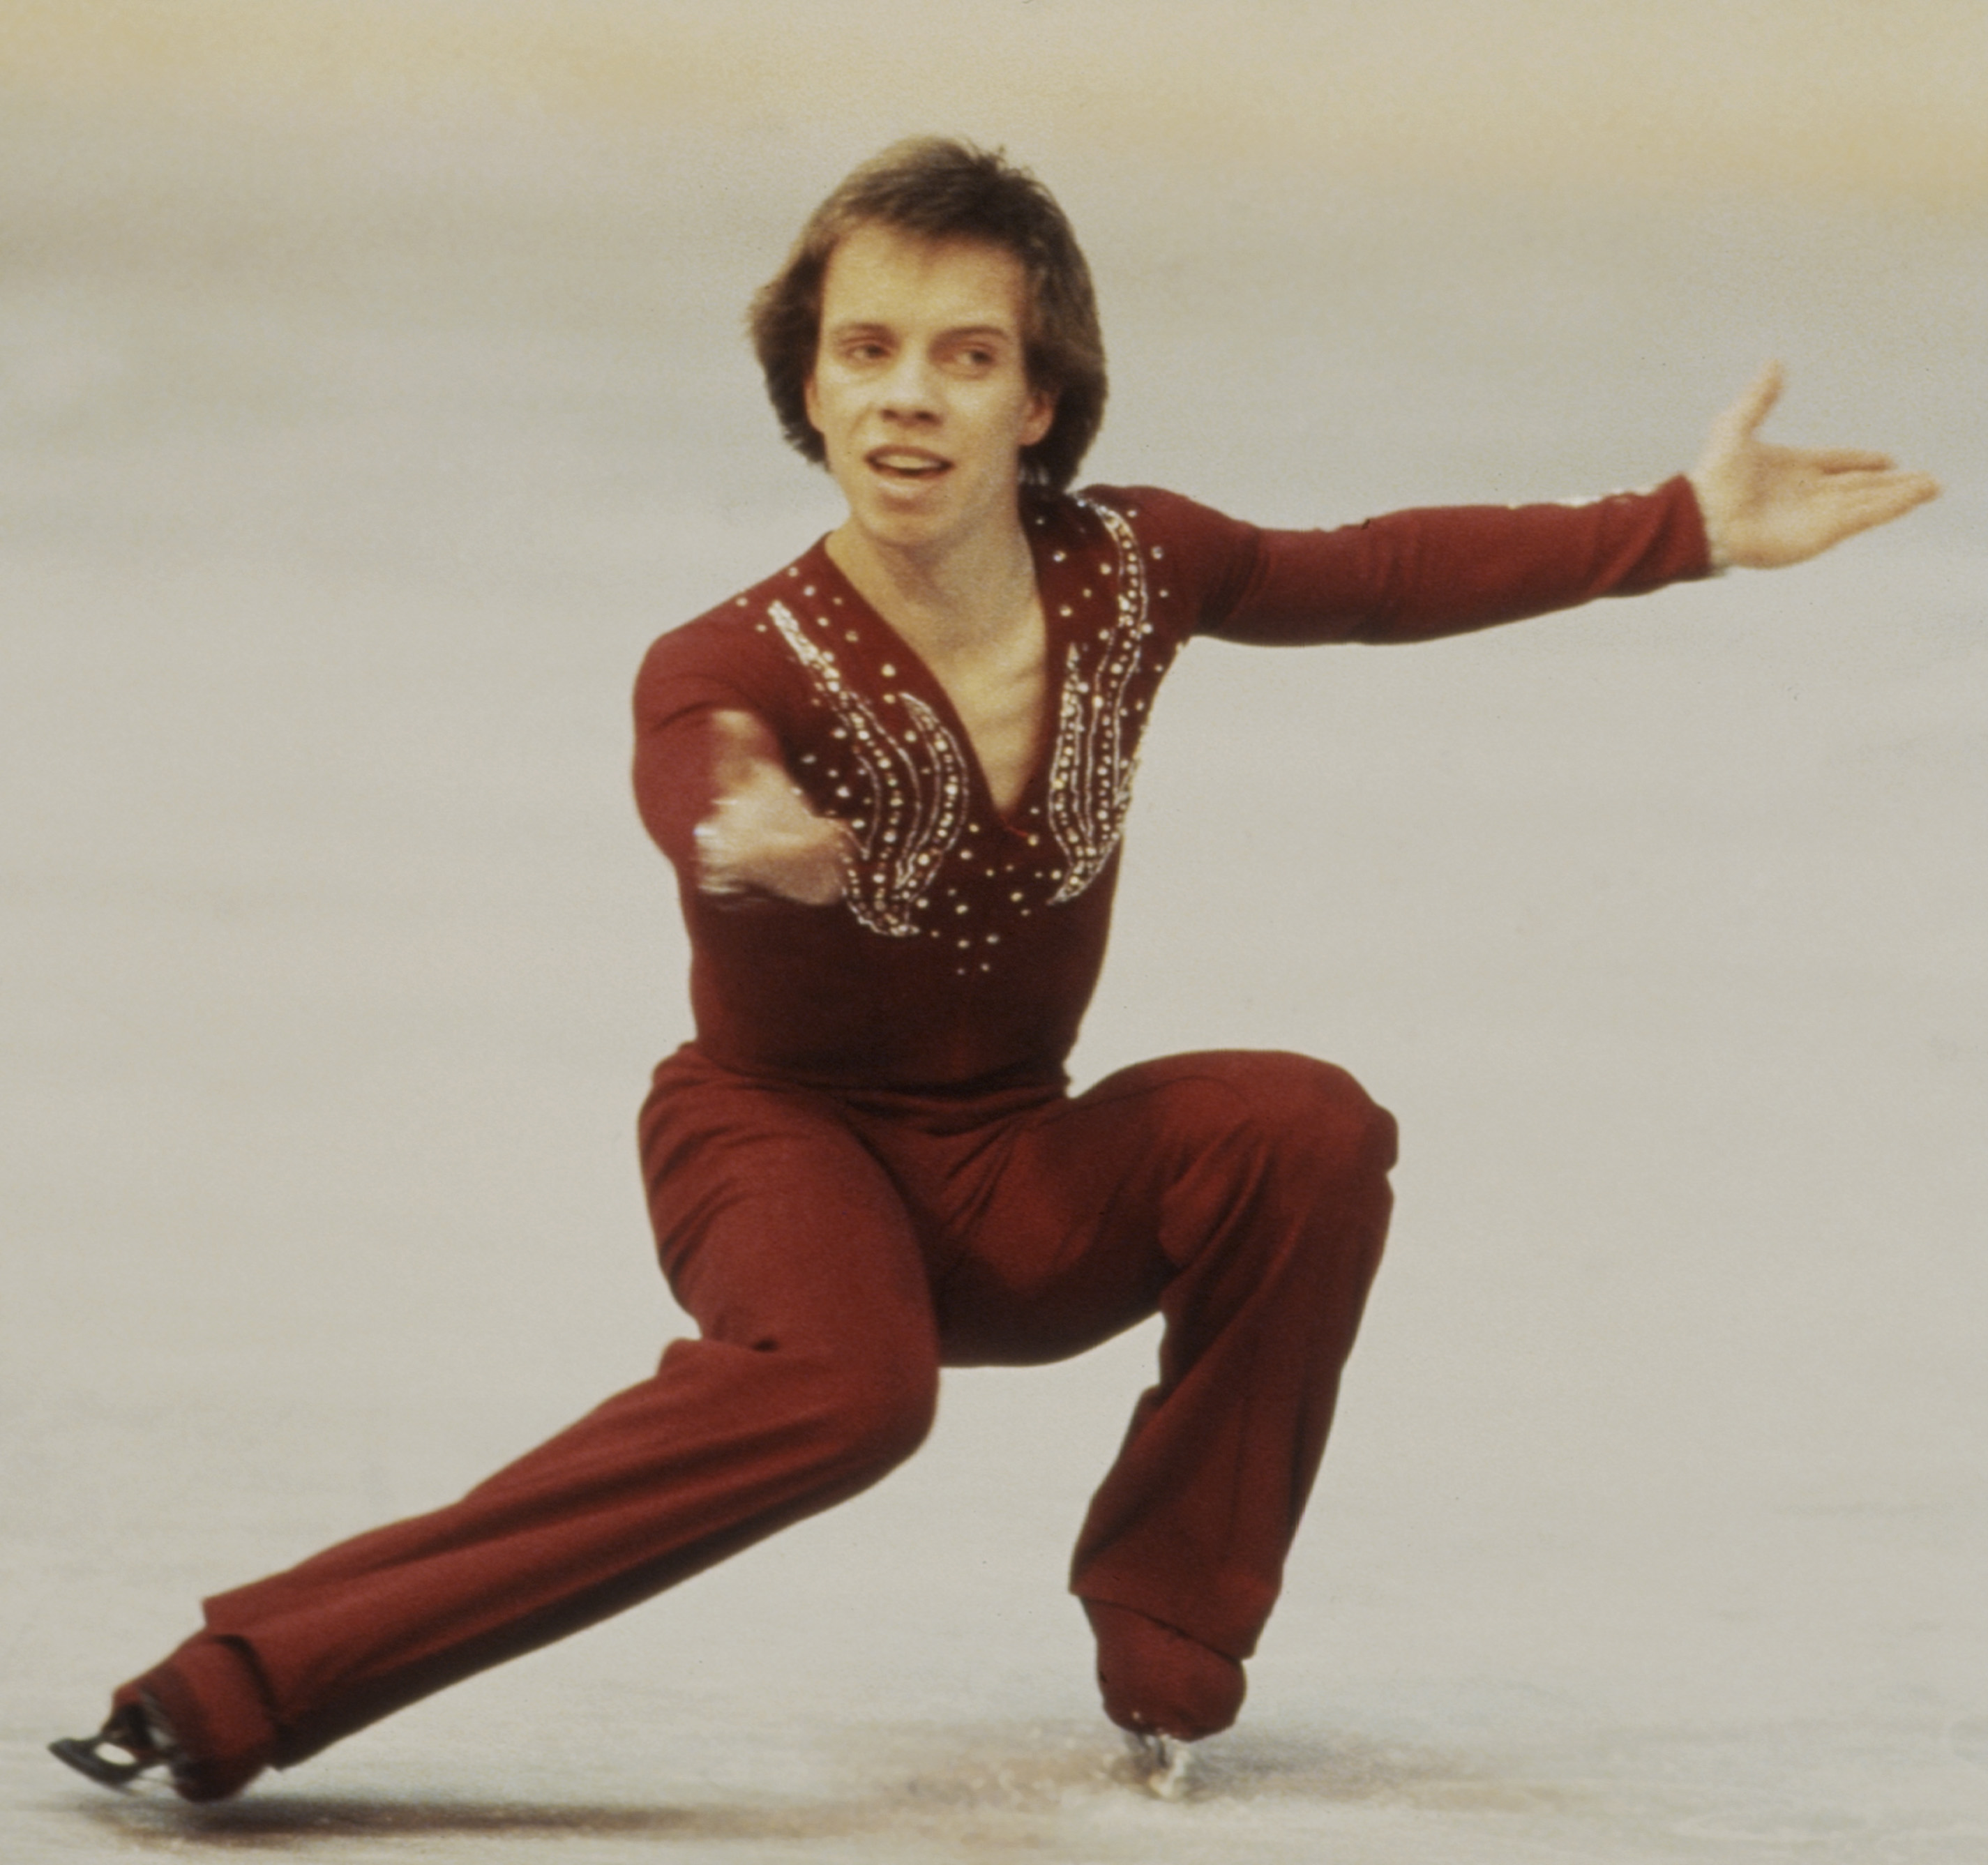 Scott Hamilton compite en la prueba individual masculina de los Campeonatos del Mundo de Patinaje Artístico de 1981 el 6 de marzo de 1981 | Foto: Getty Images